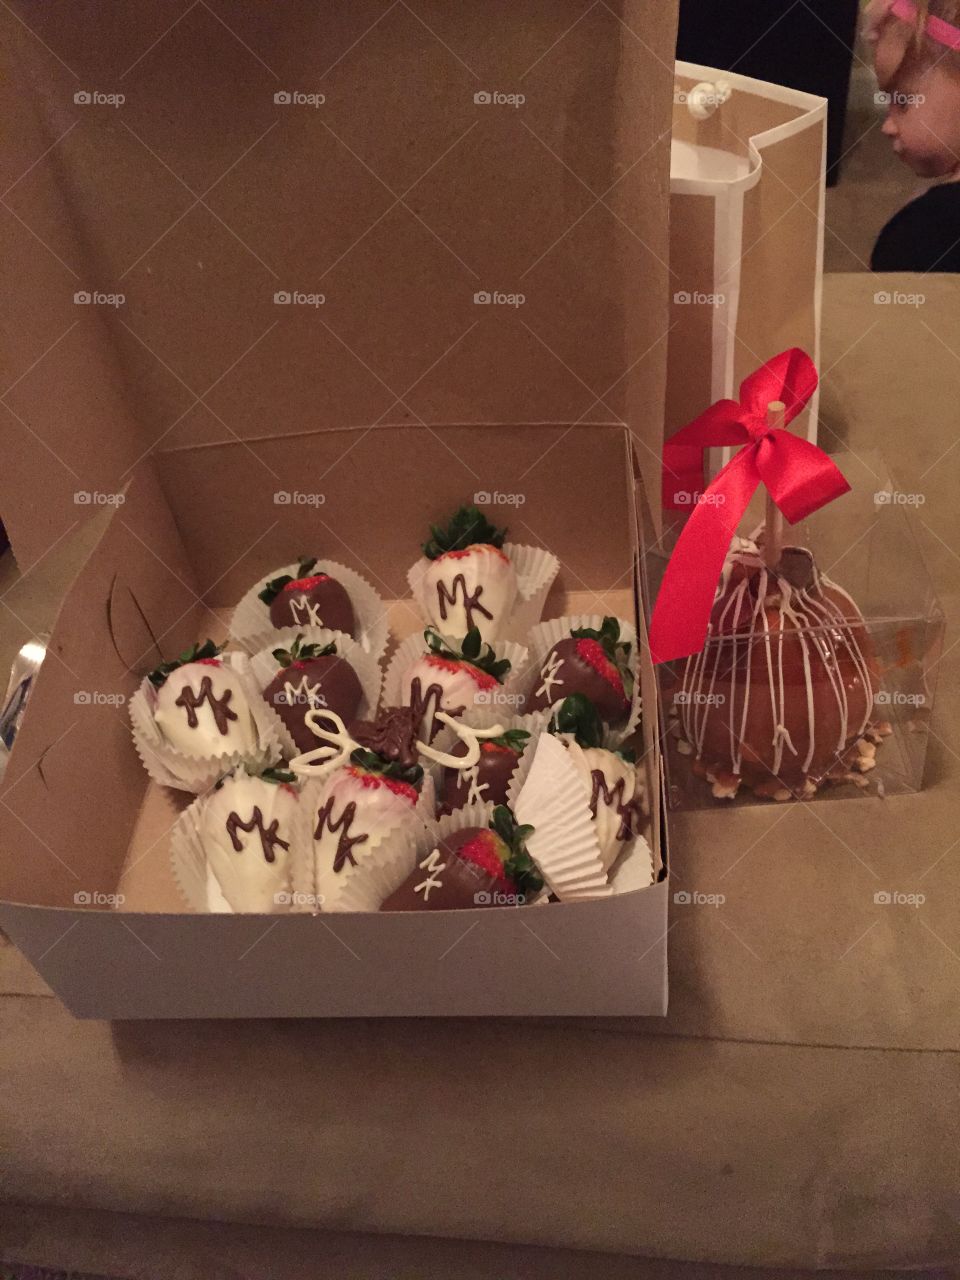 #MK #chocolatecoveredstrawberries 🍓 #yum #food 